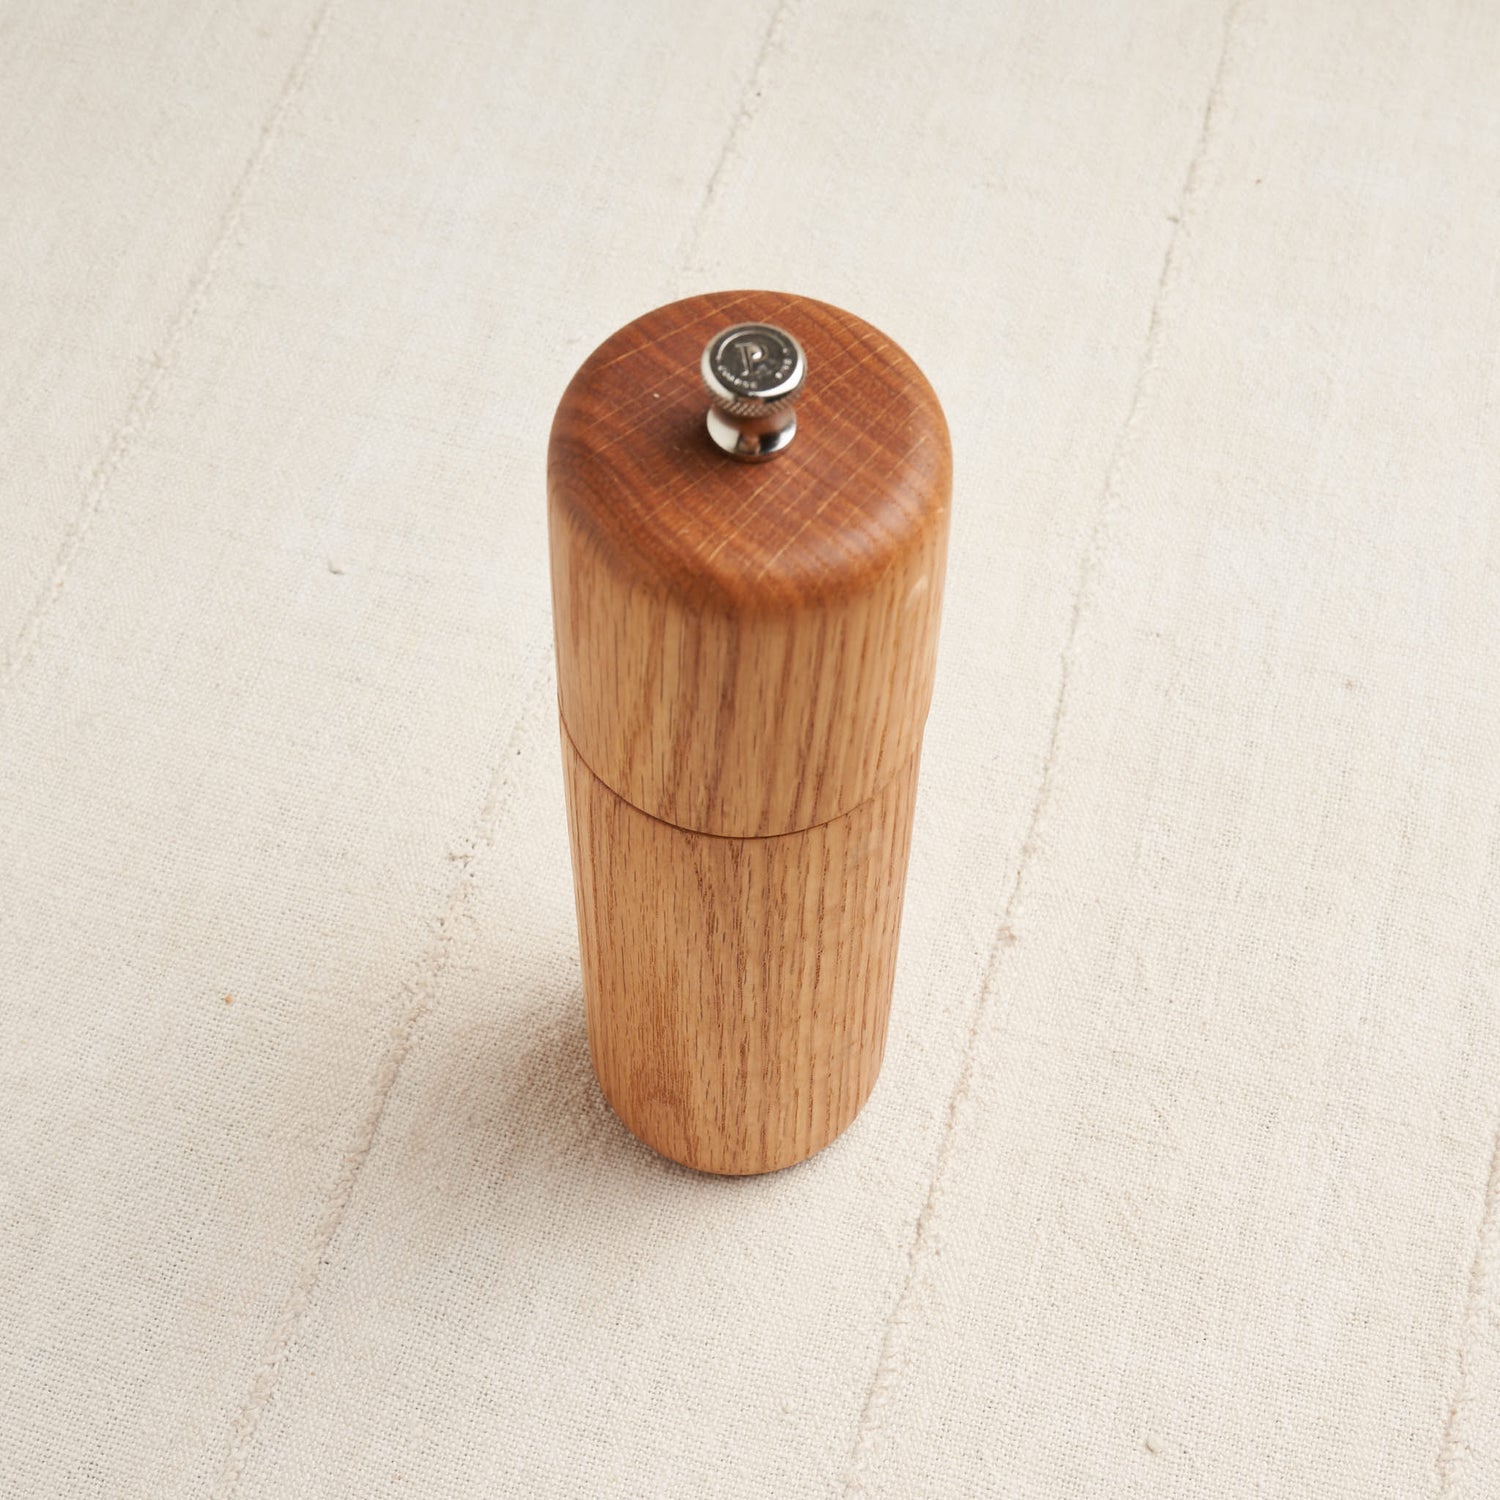 Oak Wooden Salt Pepper Grinder - Set of 2